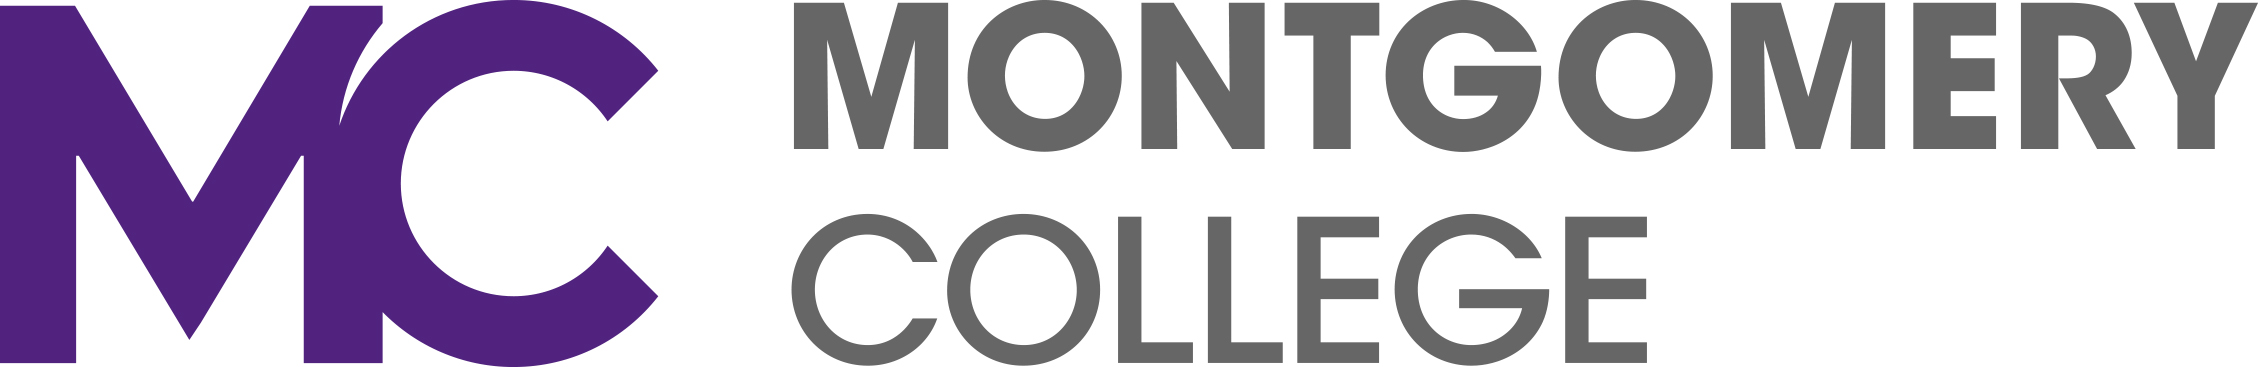 montgomery college logo